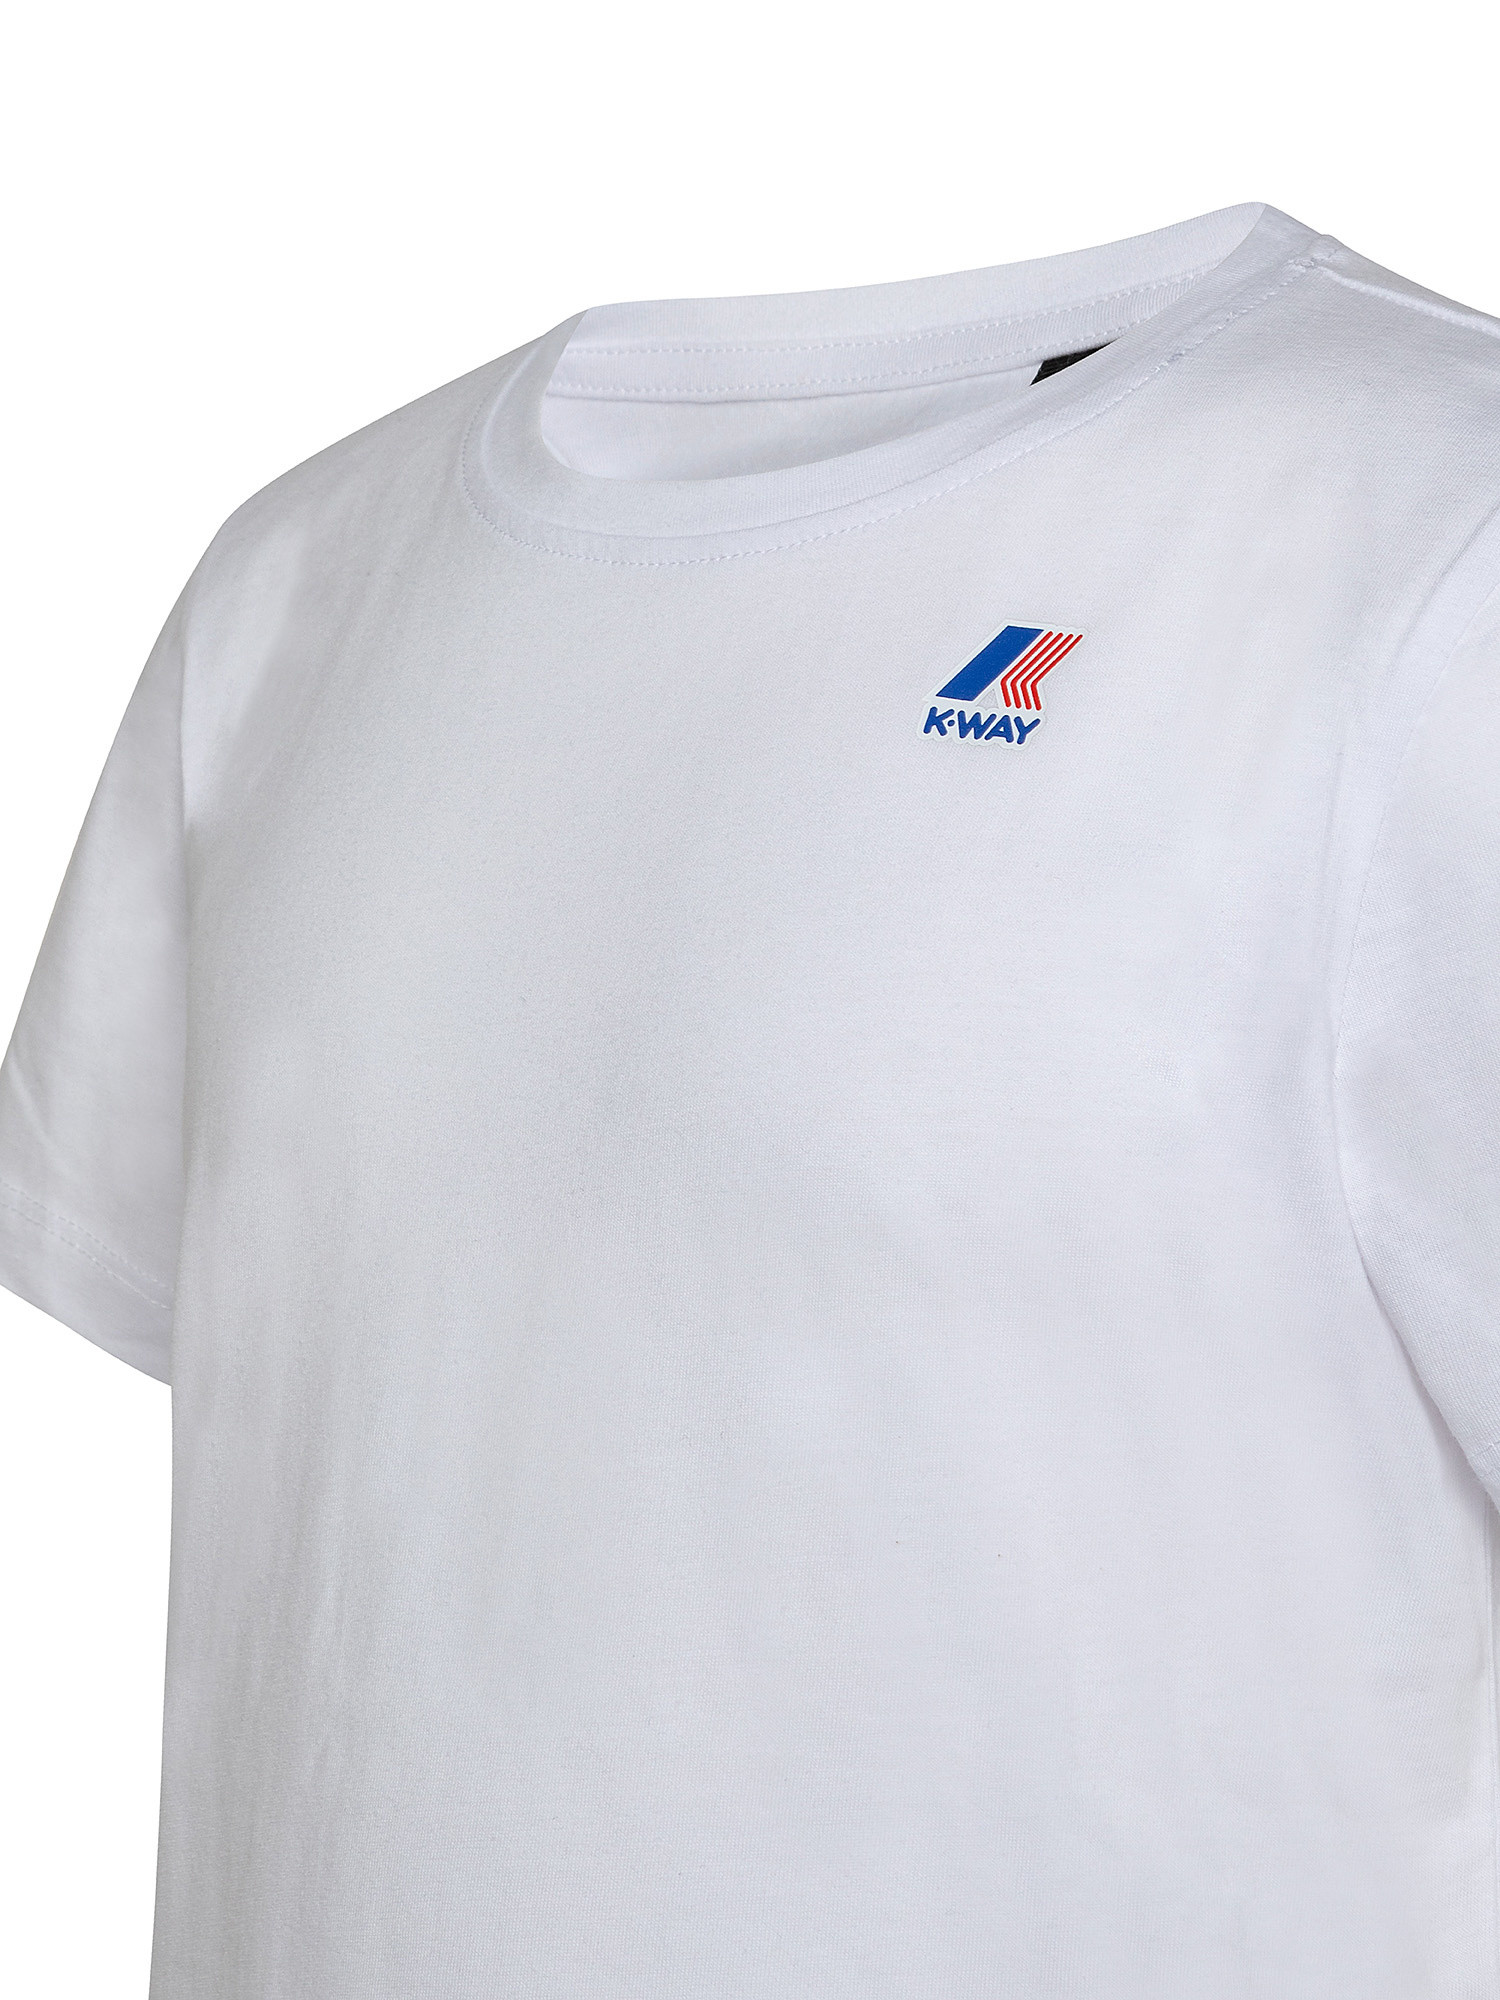 T-shirt ragazzo regular fit, Bianco, large image number 2